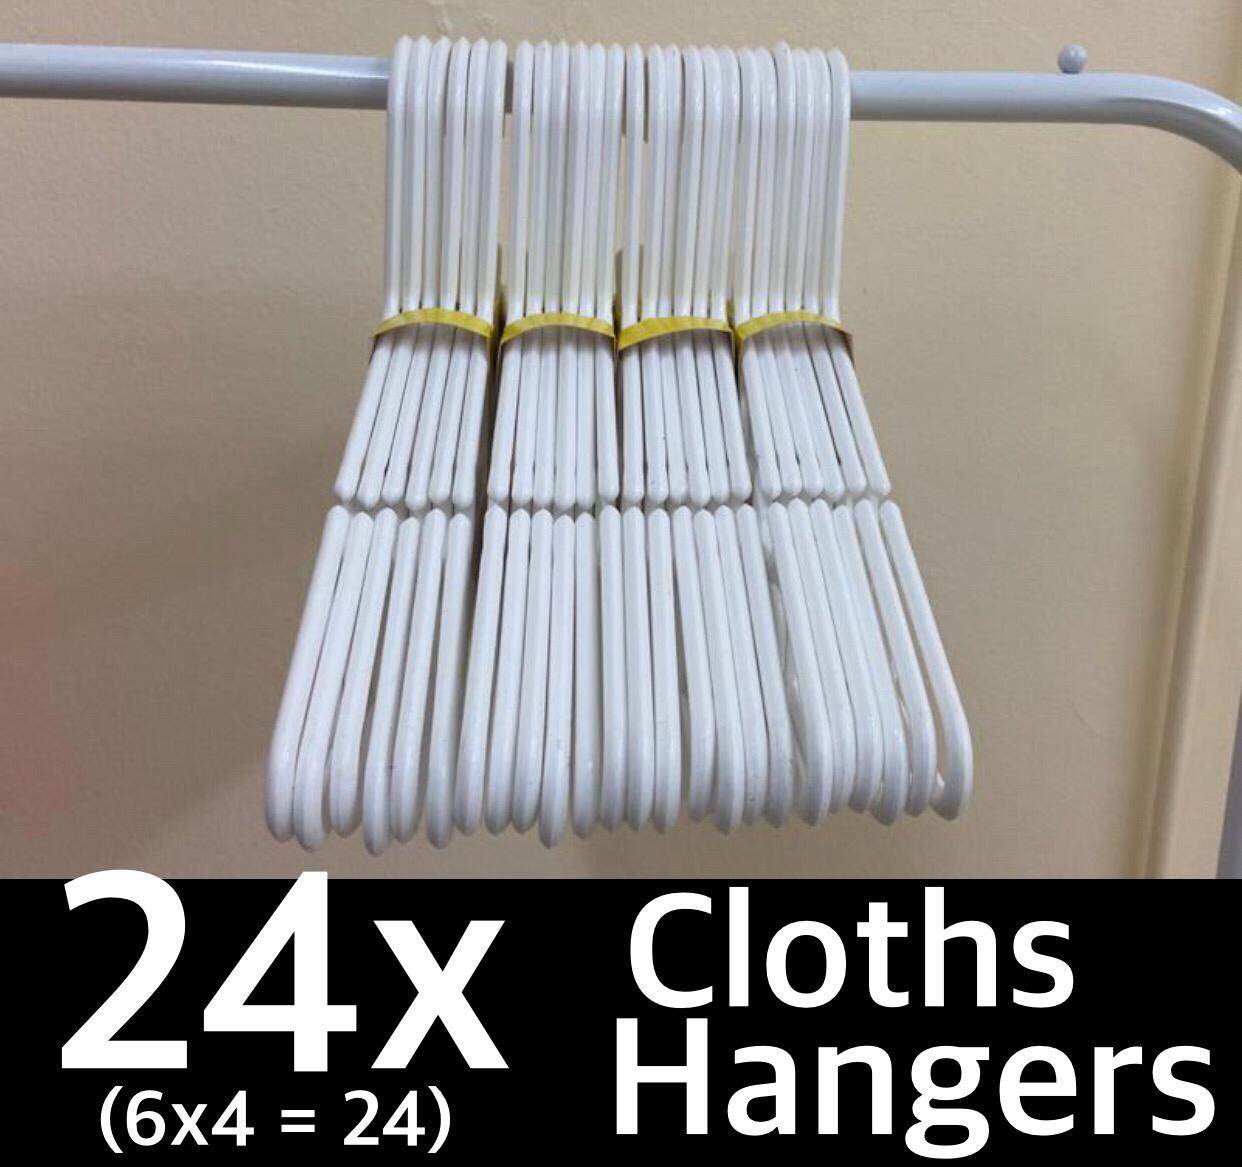 24x Cloths Hangers (6x4 = 24 pcs) - Size 41cmx19cm - Adult Hangers